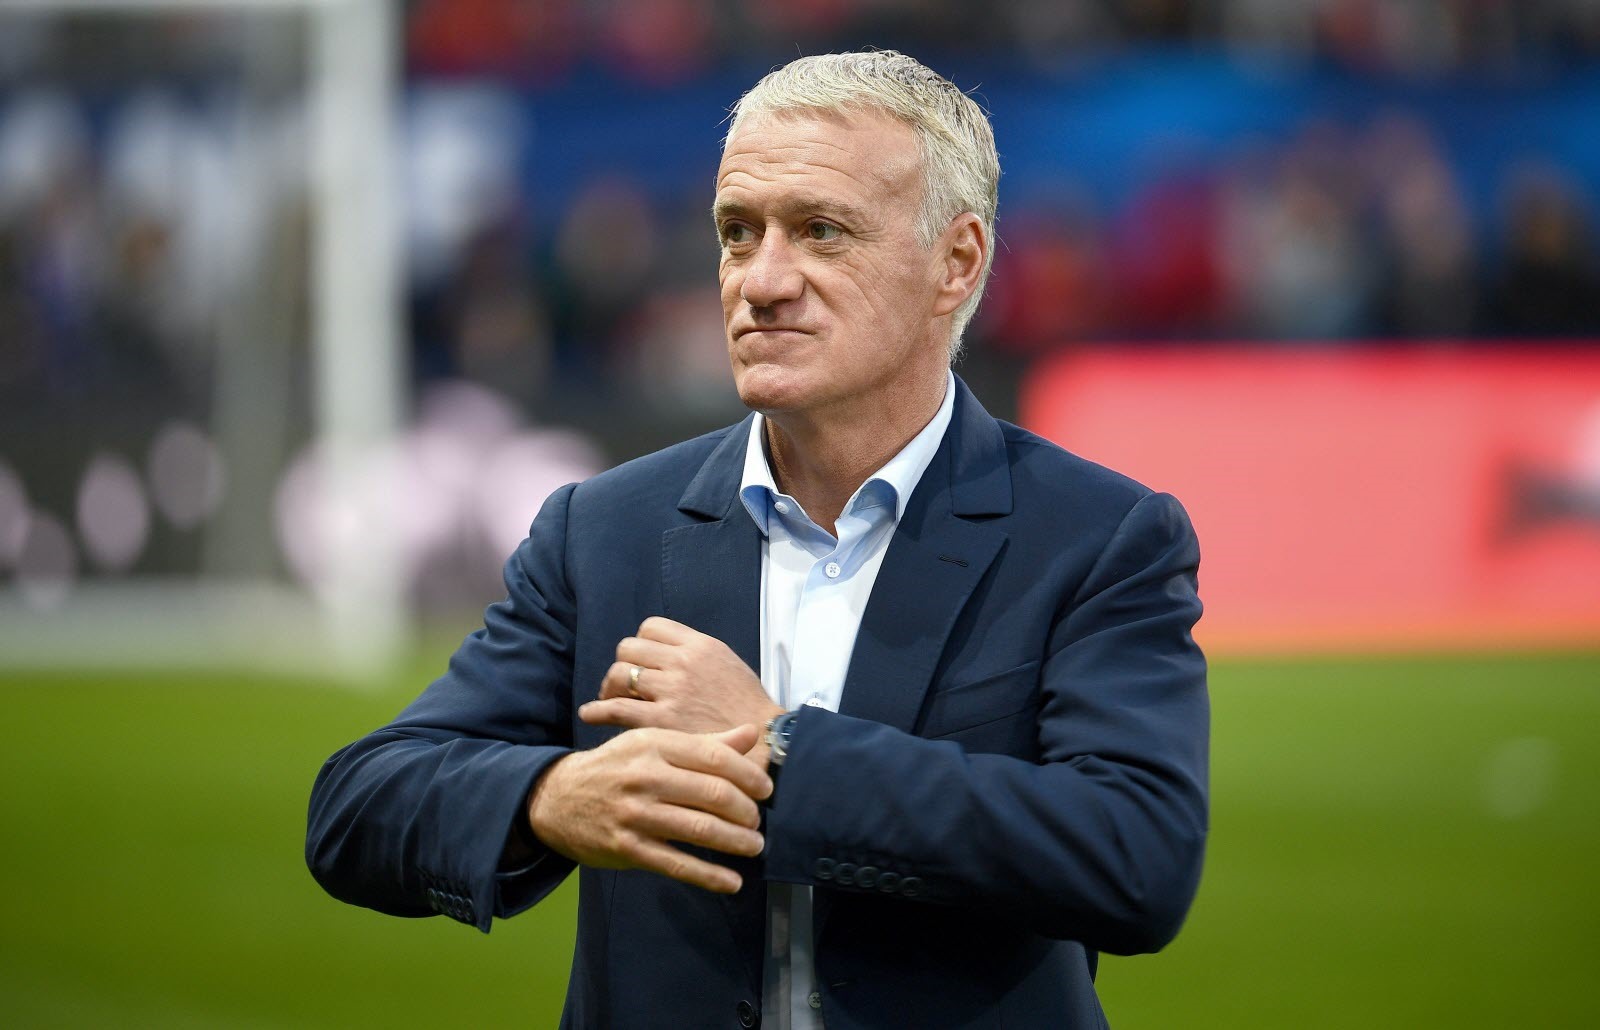 World Cup 2022 sẽ là giải đấu cuối cùng của Dider Deschamps trên cương vị huấn luyện viên tuyển Pháp. Ảnh: AFP